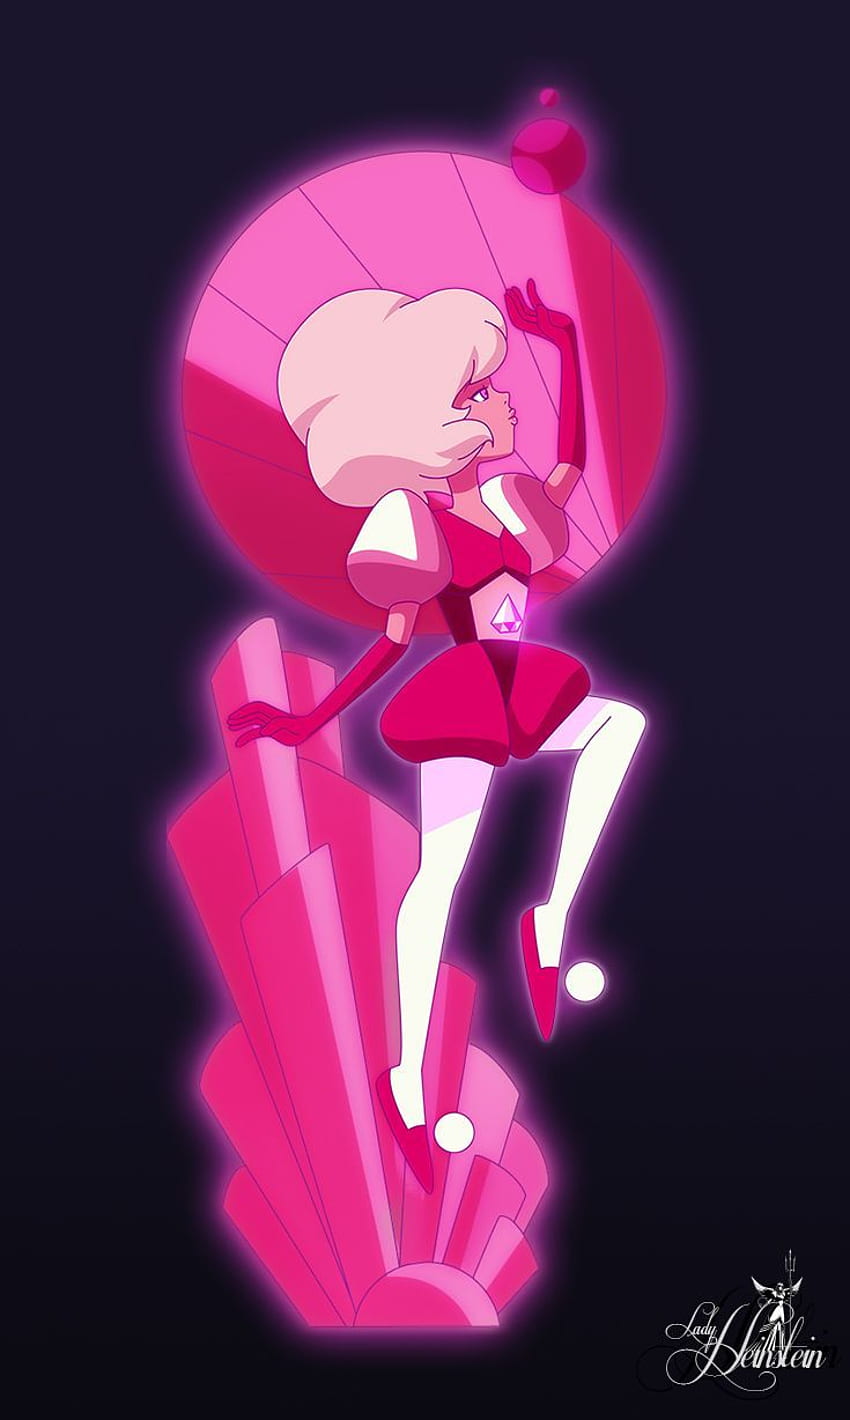 Hình nền Pink Steven Universe rực rỡ với sắc hồng tươi tắn, truyền tải đến bạn vẻ đáng yêu và phấn khích. Nếu bạn yêu thích Steven Universe, hãy nhấp vào hình để khám phá thế giới đầy màu sắc này!